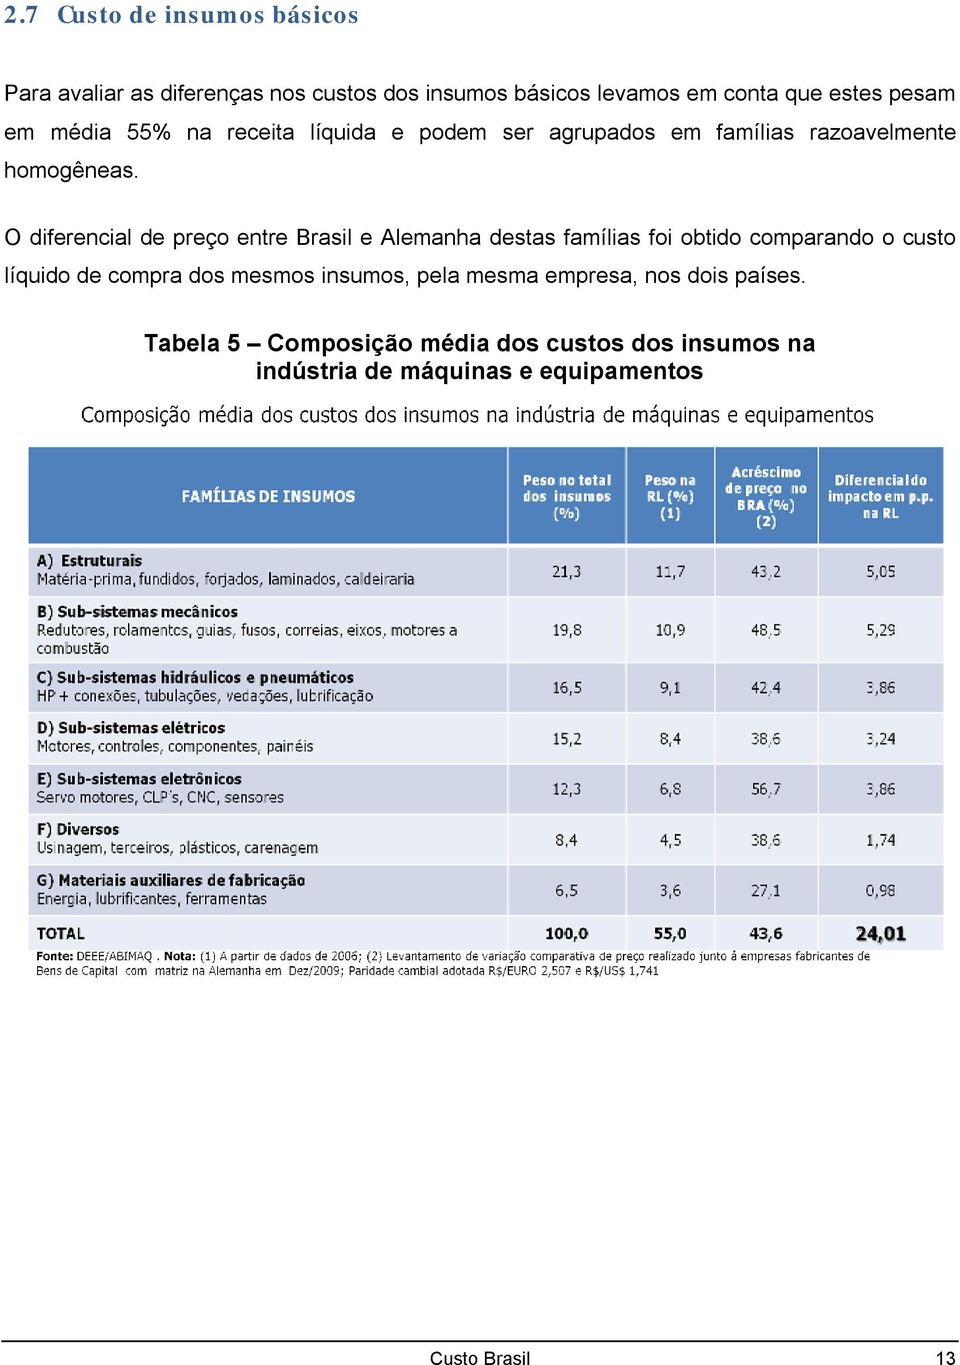 O diferencial de preço entre Brasil e Alemanha destas famílias foi obtido comparando o custo líquido de compra dos